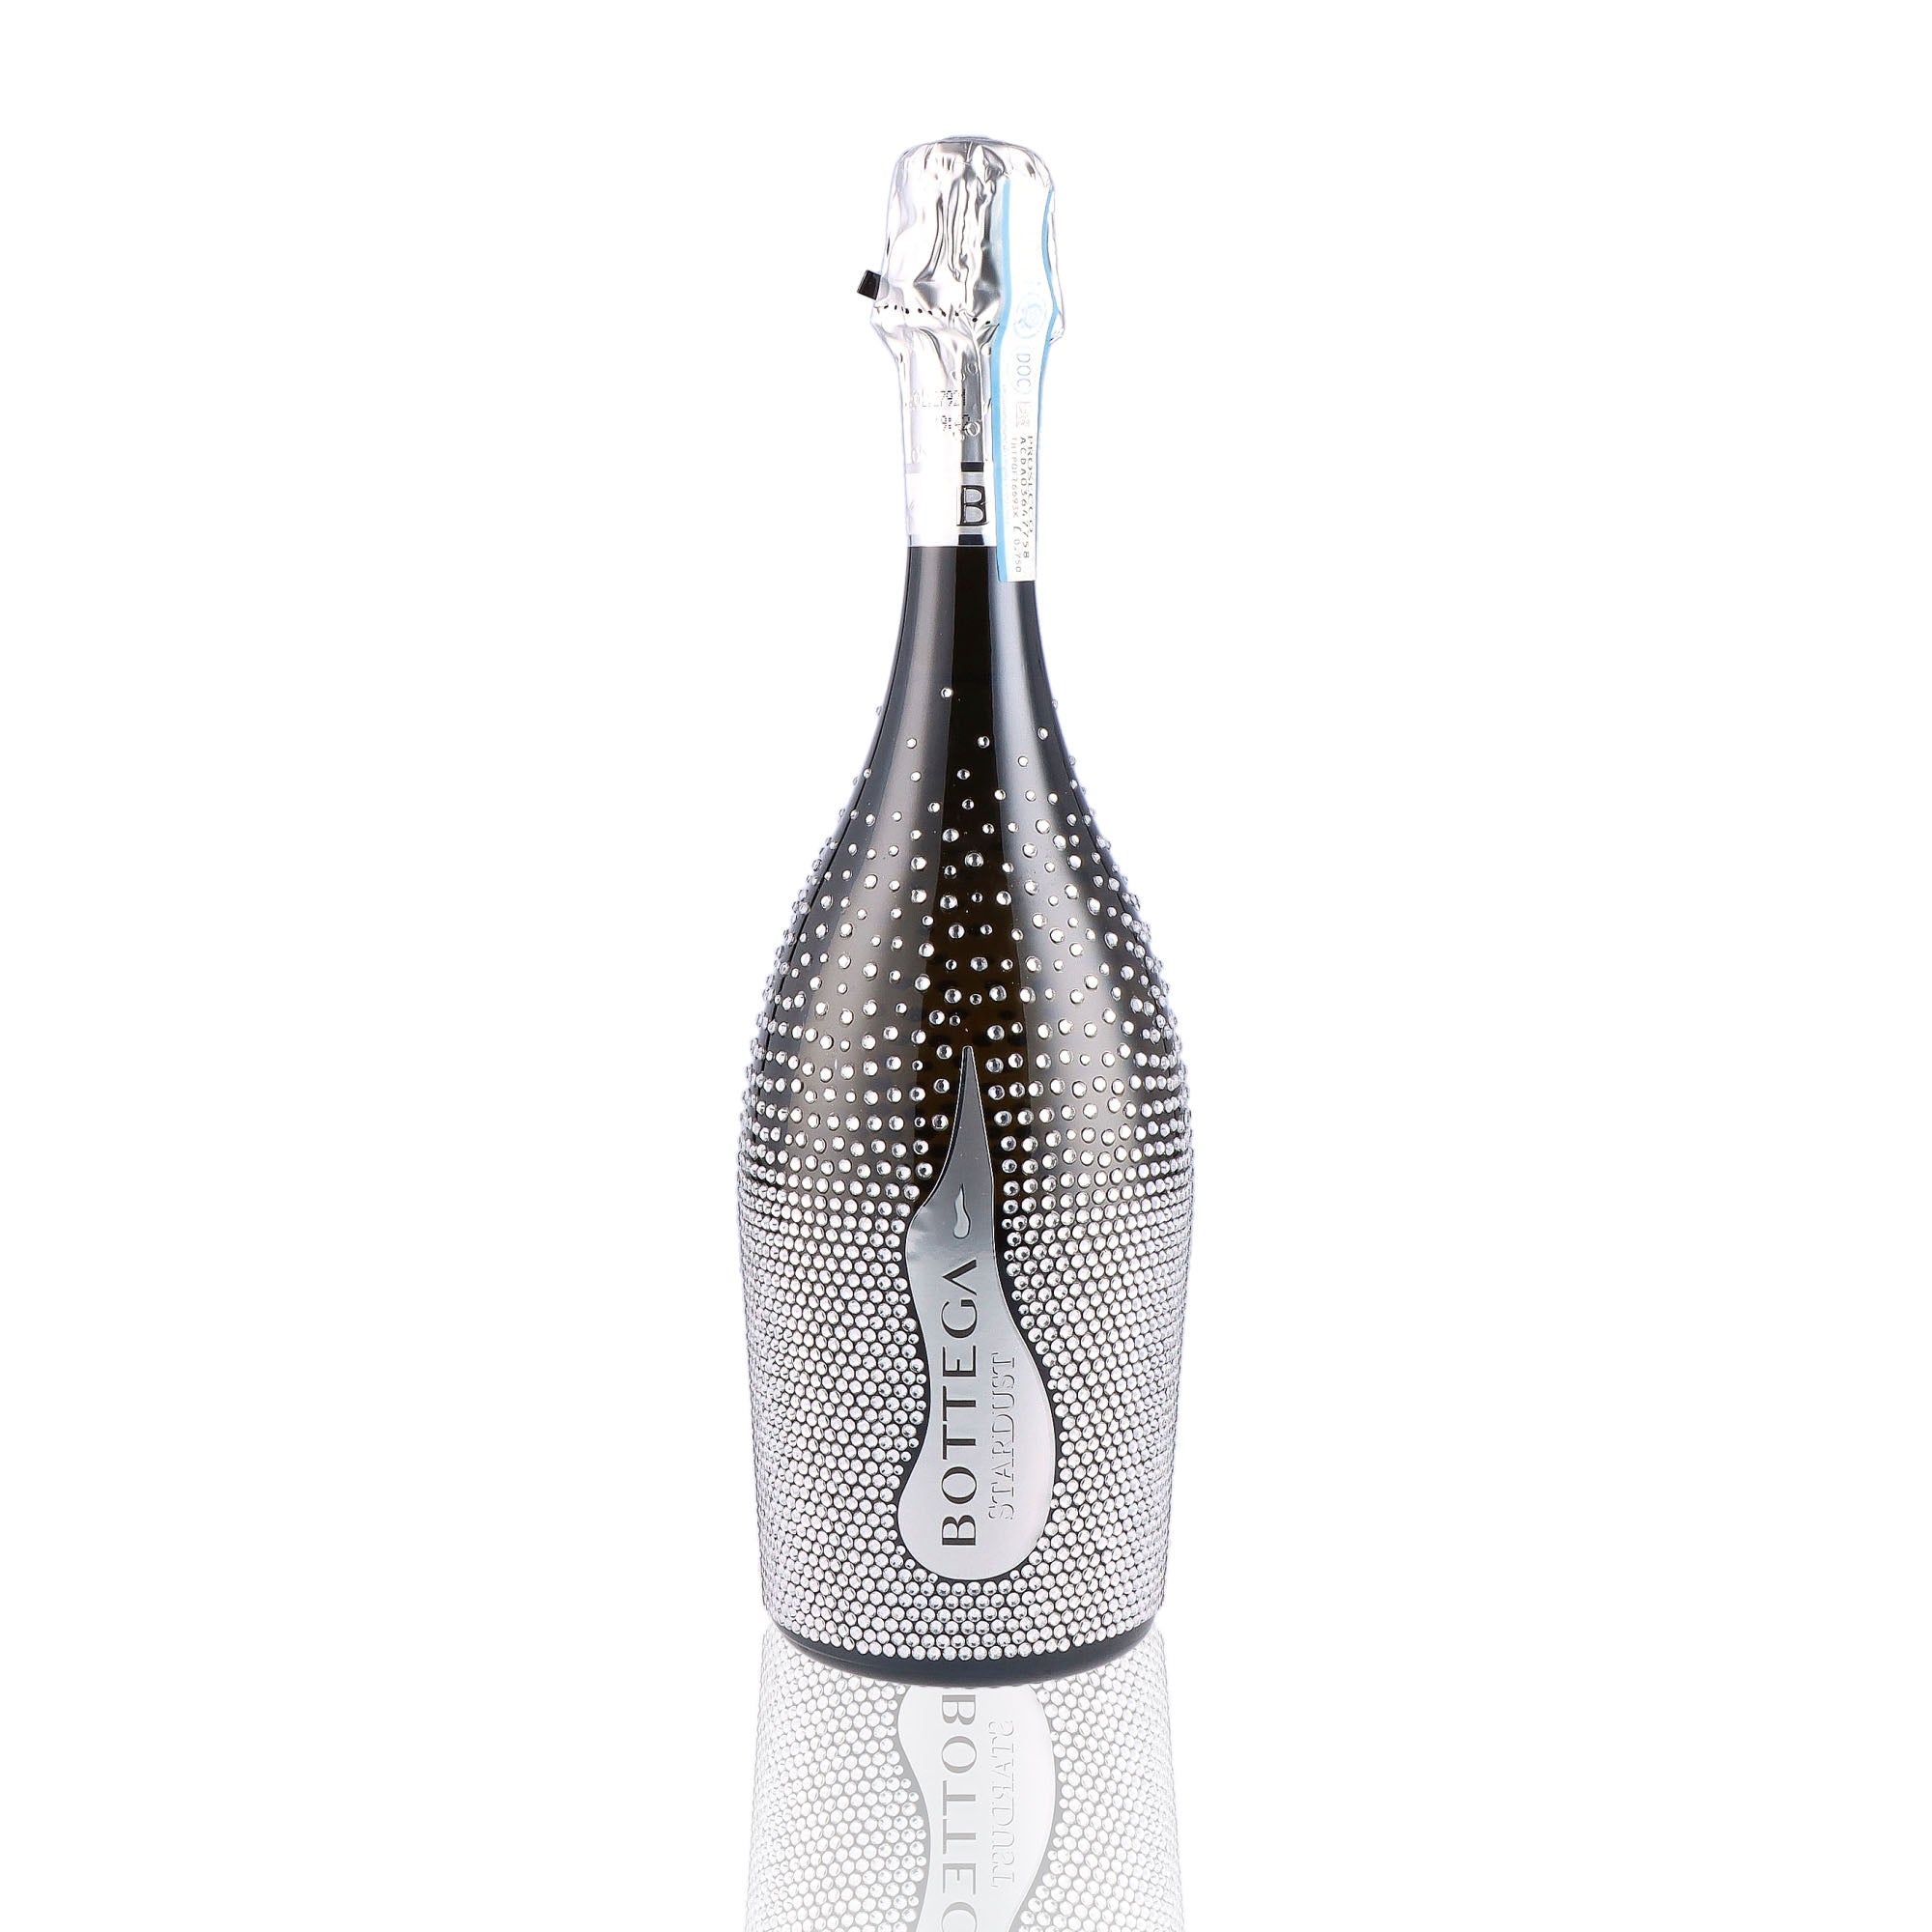 Une bouteille de prosecco de la marque Bottega, de type brut, nommée stardust.